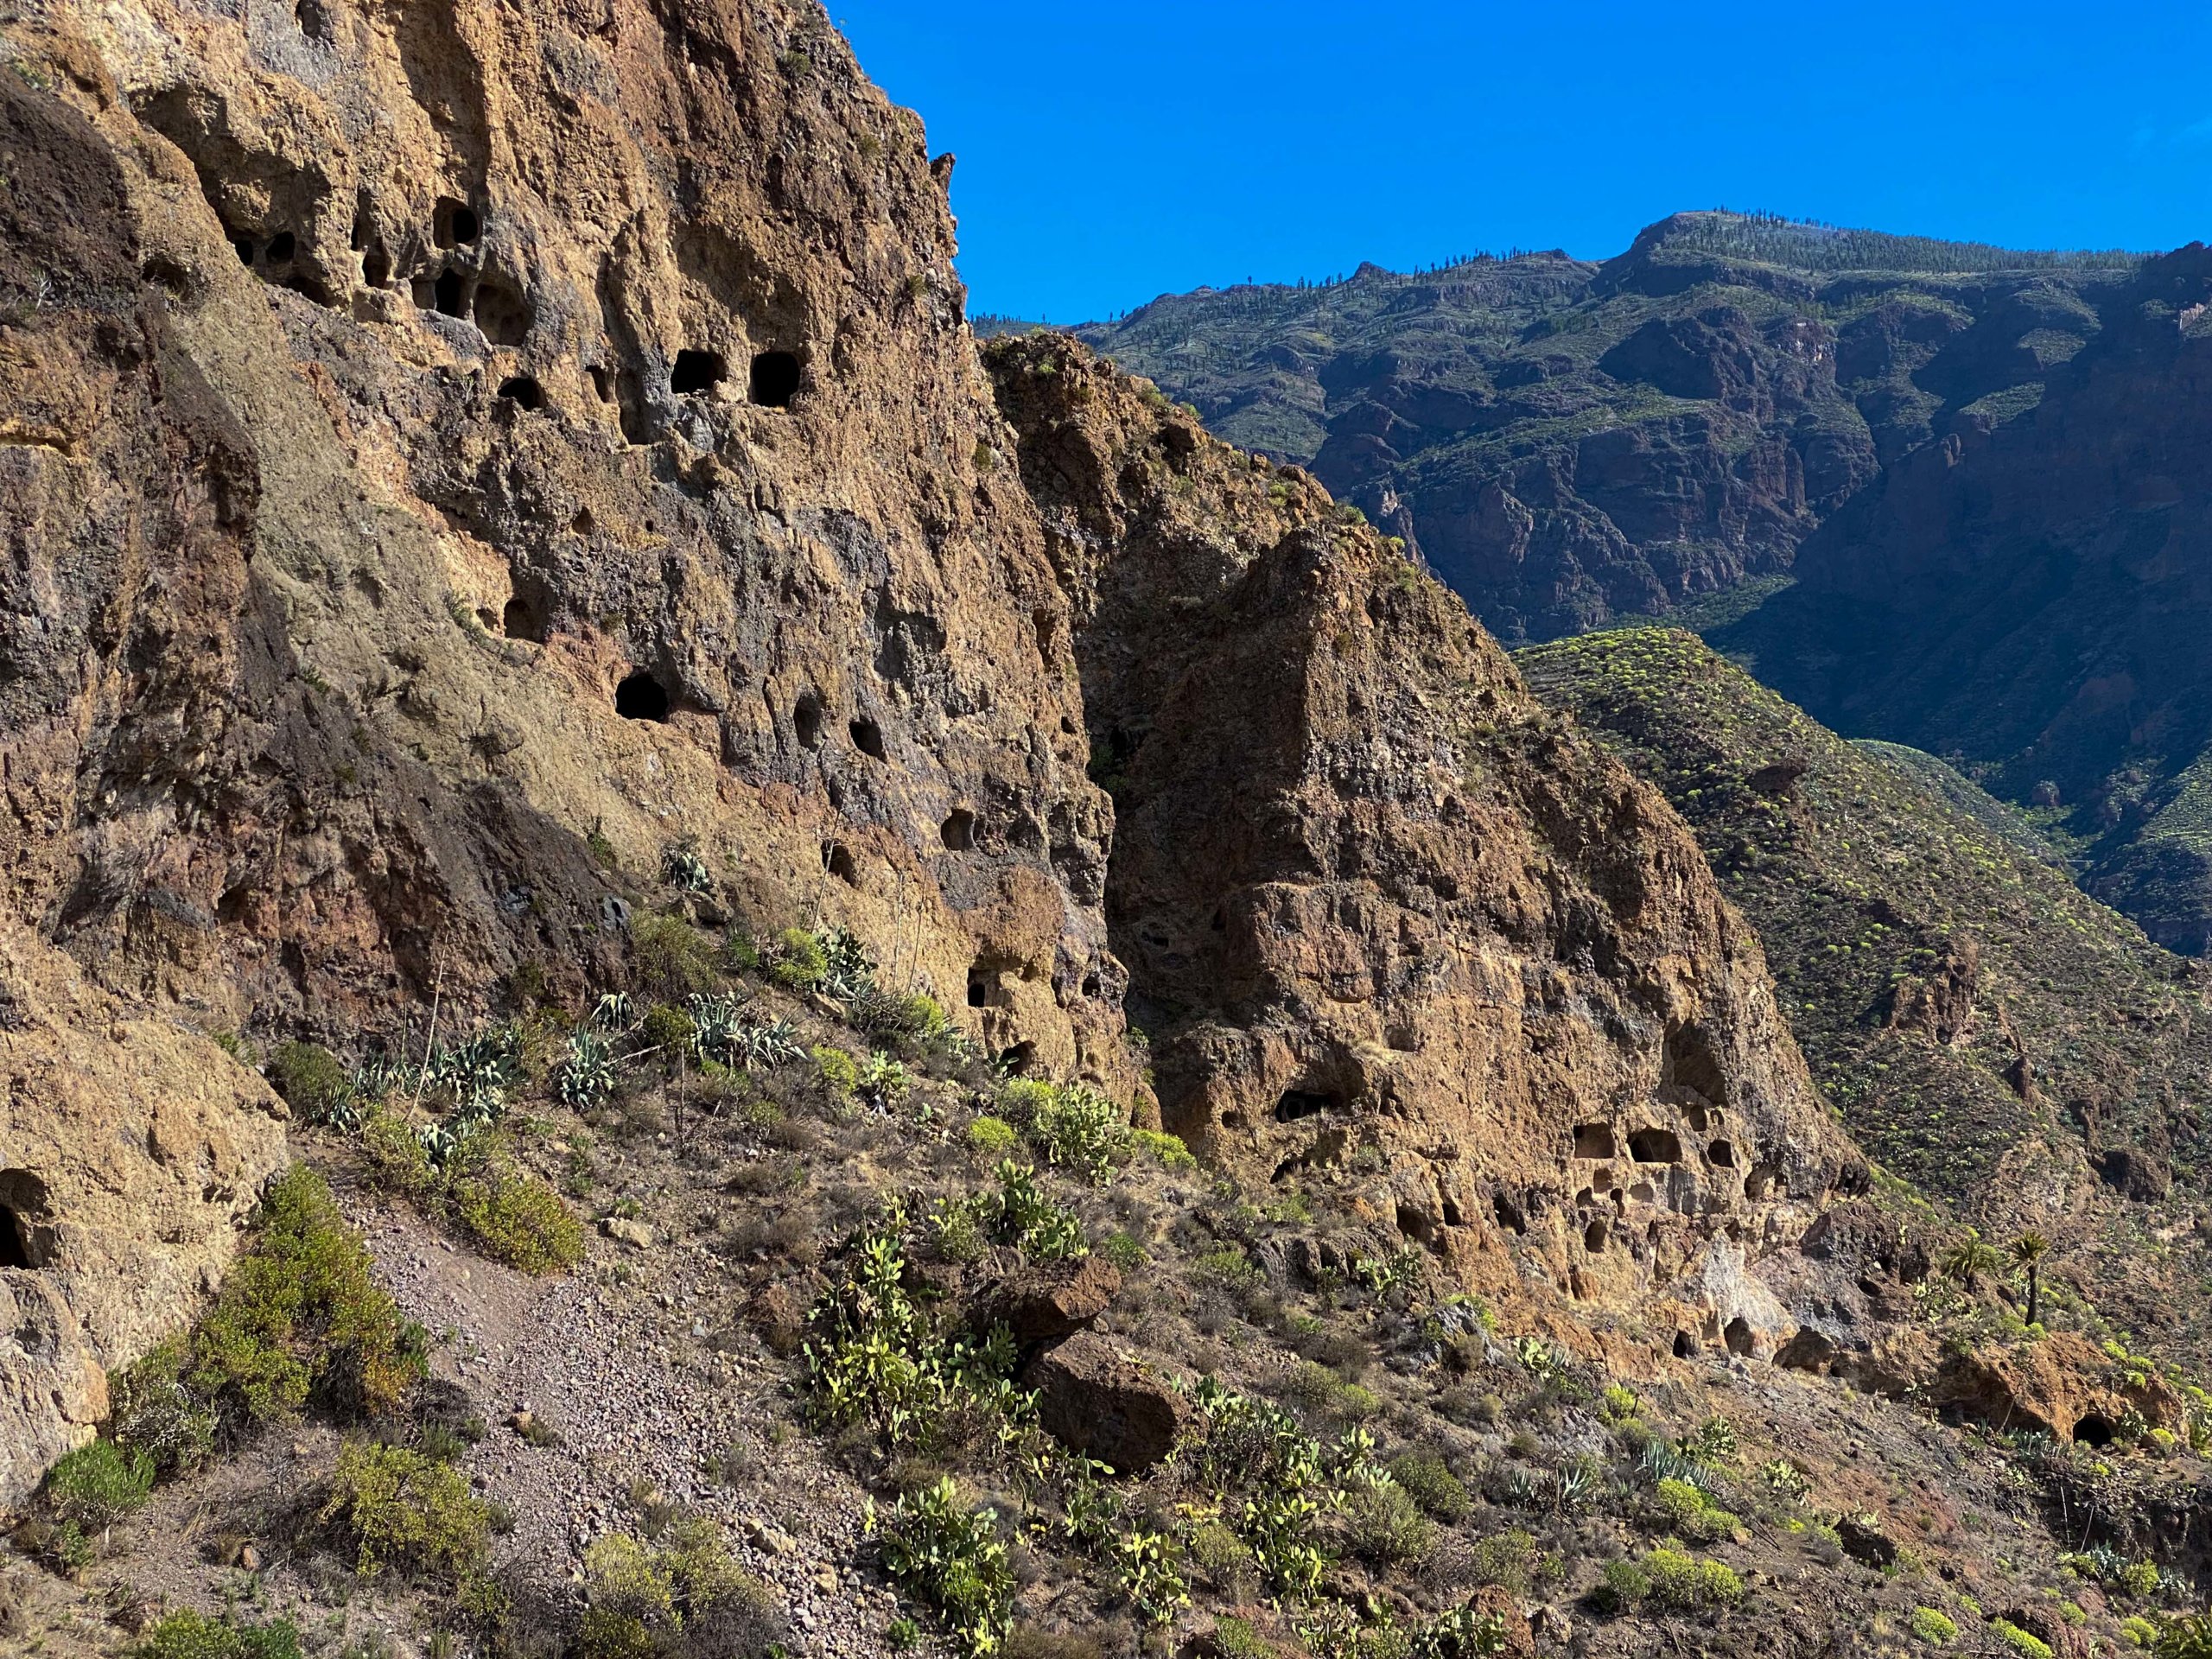 Montaña de los Huesos, San Bartolomé de Tirajana, Gran Canaria.